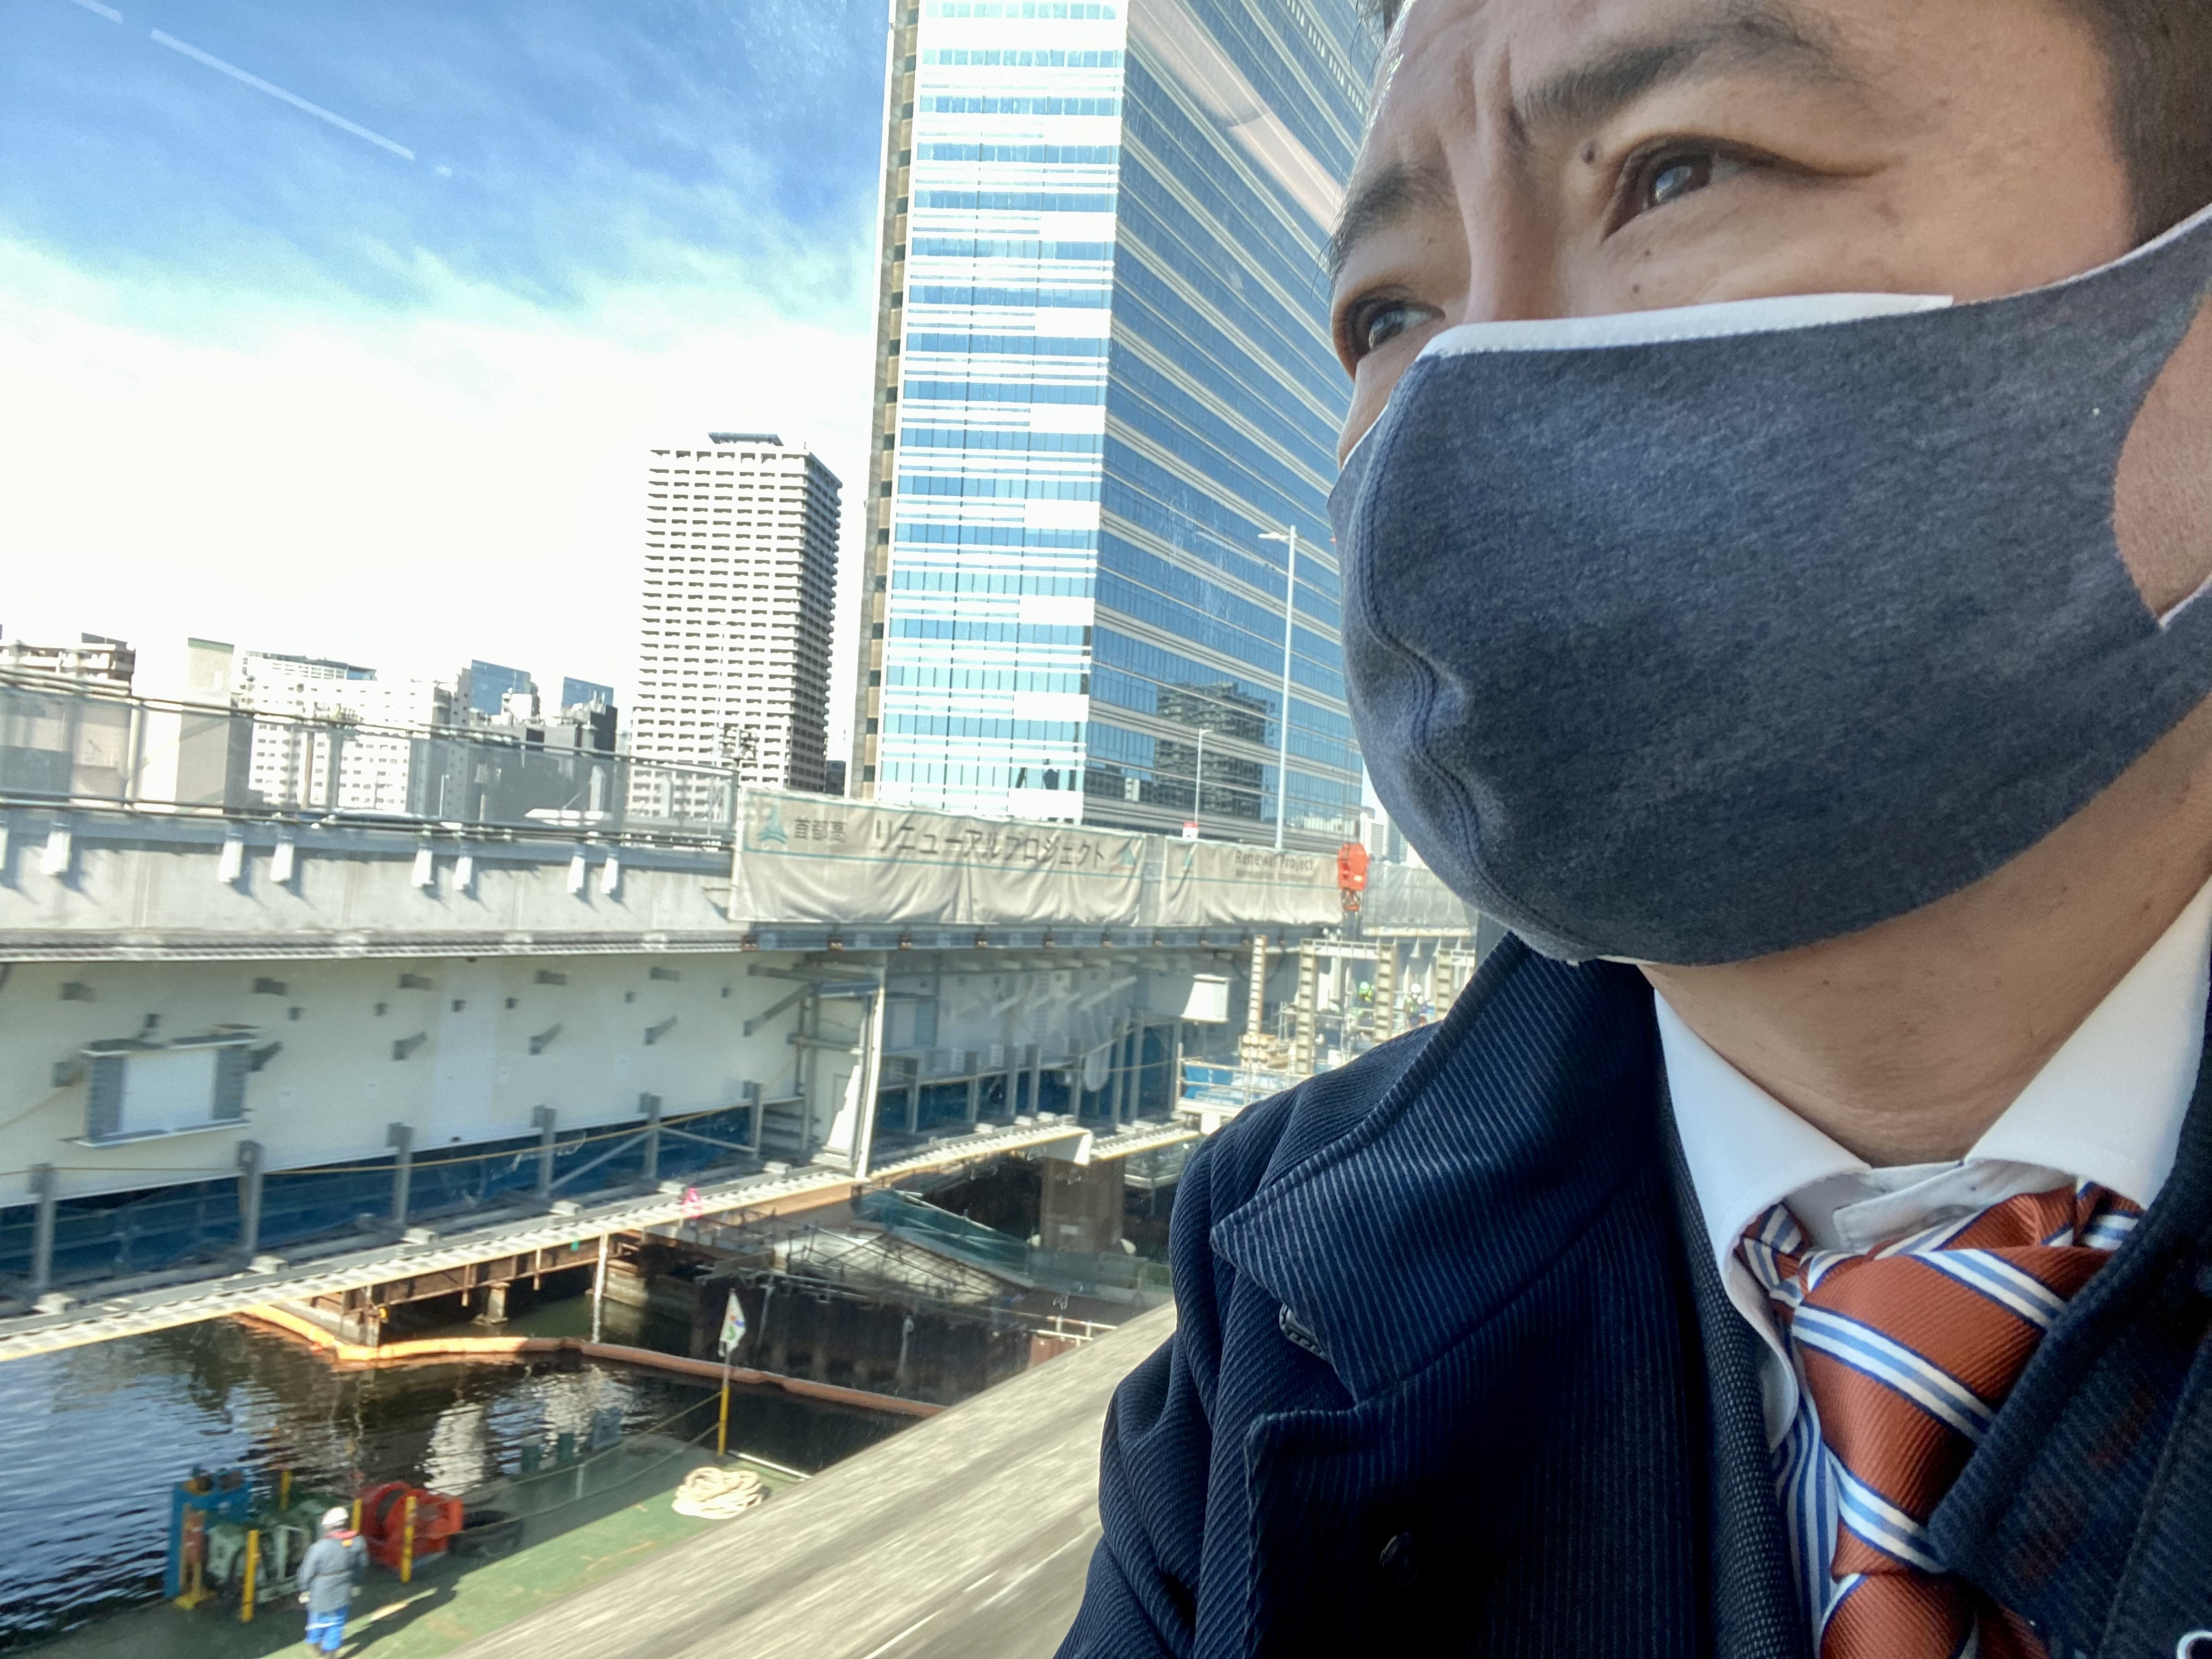 都内です。 #東京モノレール で向かっています。町田で乗れる日に、胸を熱くしながら  #新しい未来 #children_first #自由民主党 #藤田学 #町田市議 #駅頭24年目へ #選挙に行こう